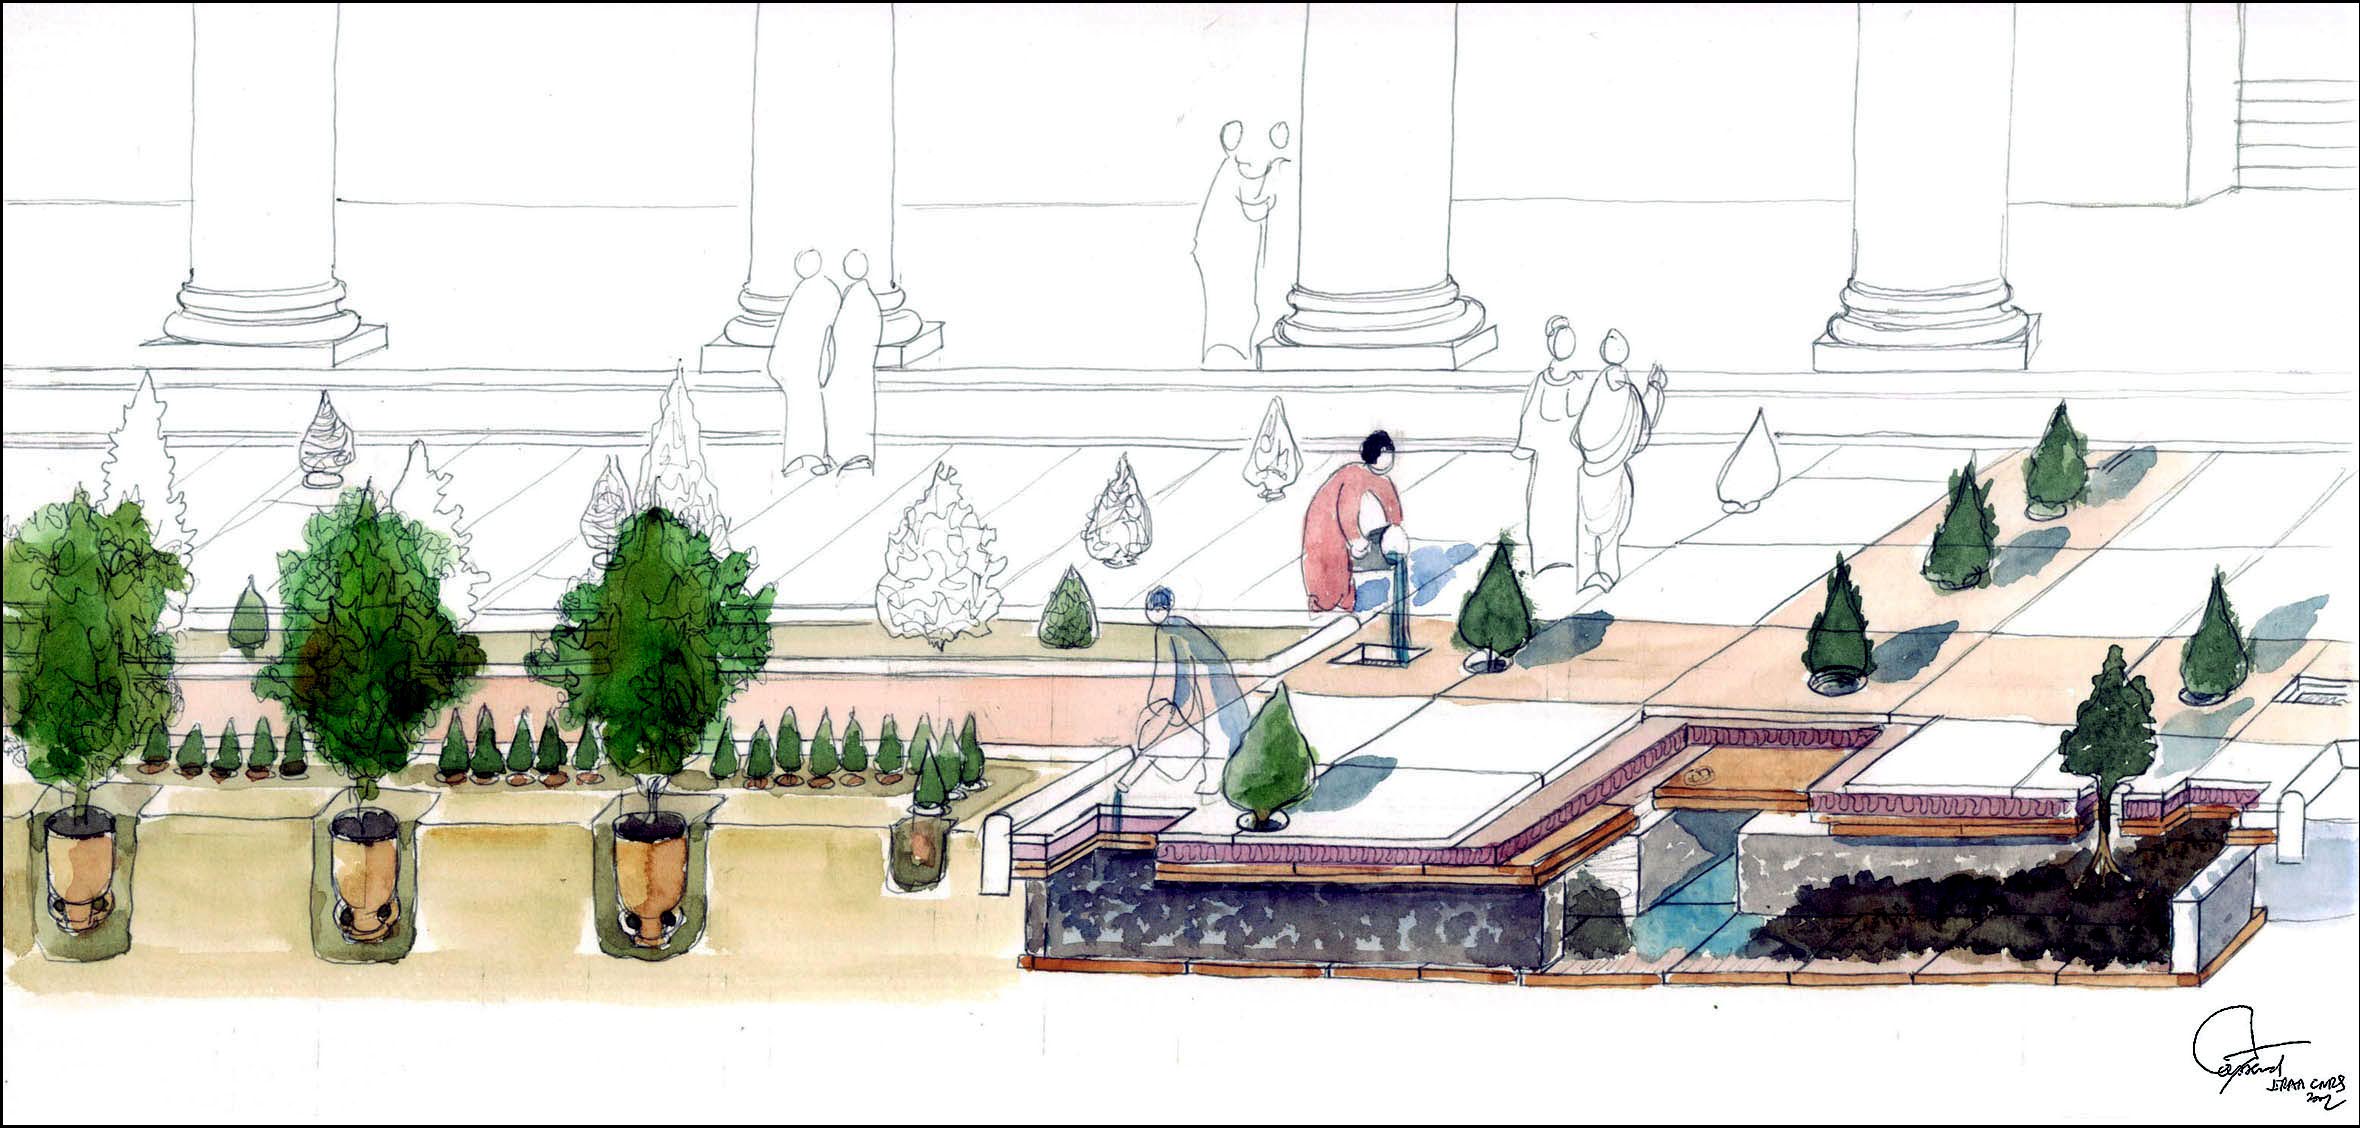 Reconstruction of the Elagabalium Garden